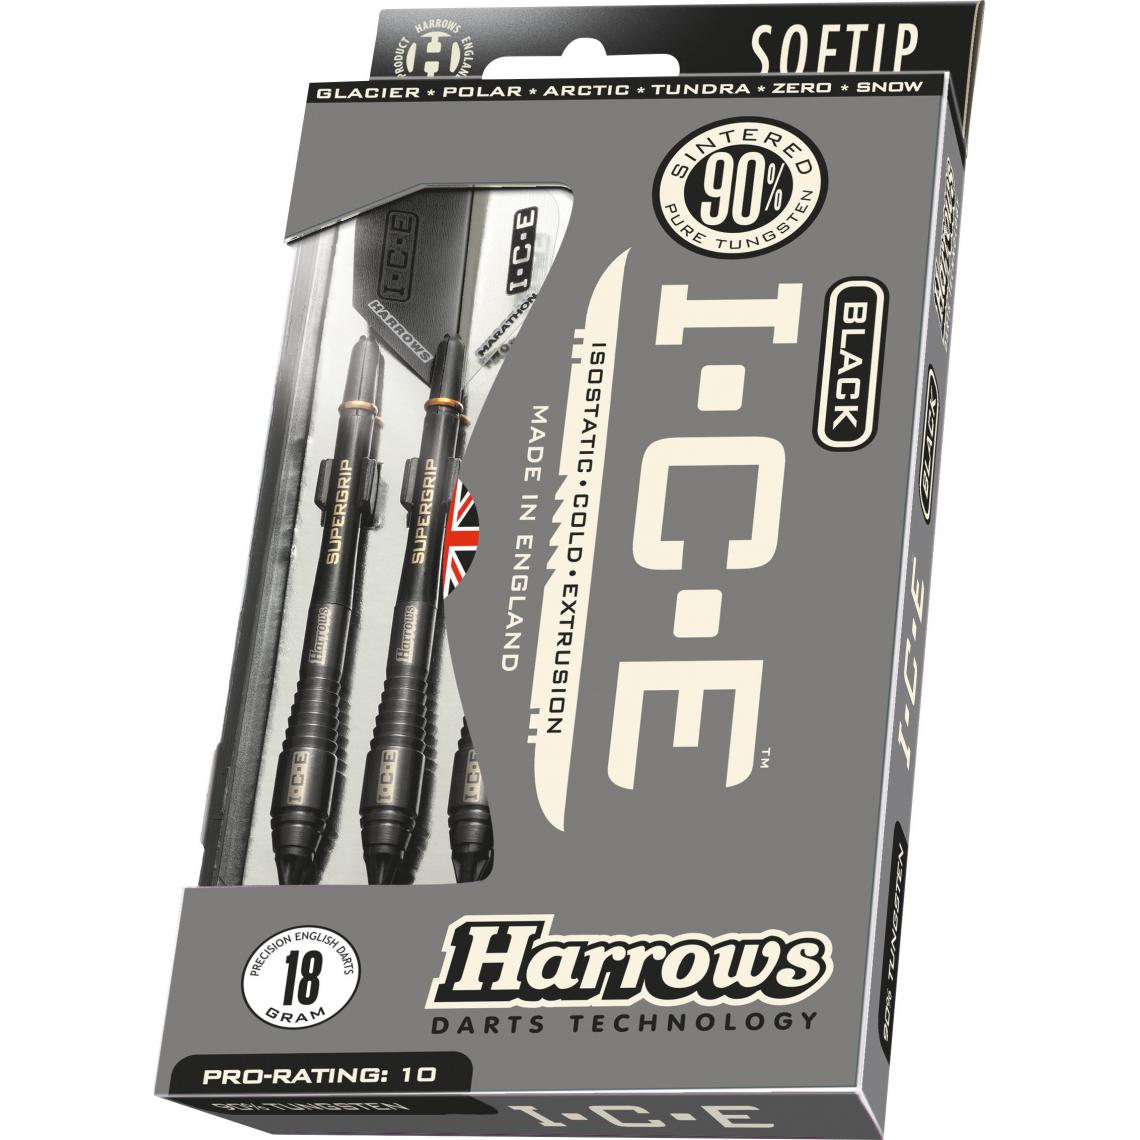 Harrows - Fléchettes HARROWS I.C.E Black 18GR 90% Tungstene pointe nylon (Plusieurs modèles) Artic - Fléchettes